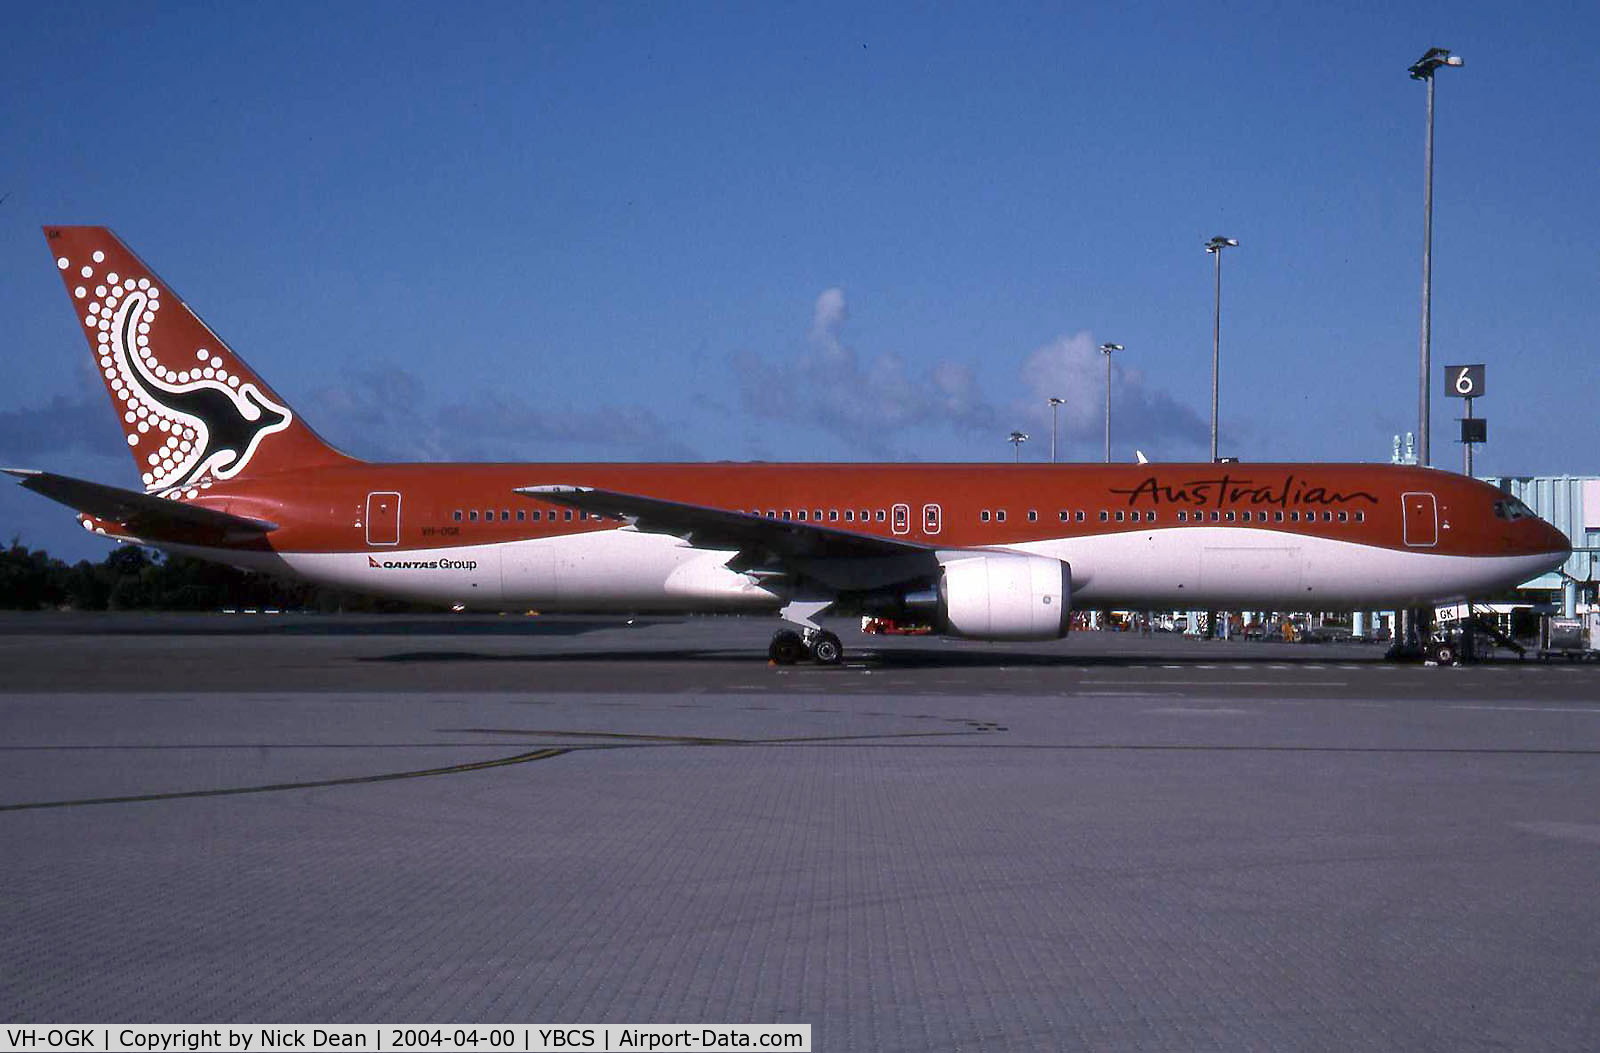 VH-OGK, 1991 Boeing 767-338 C/N 25316, /